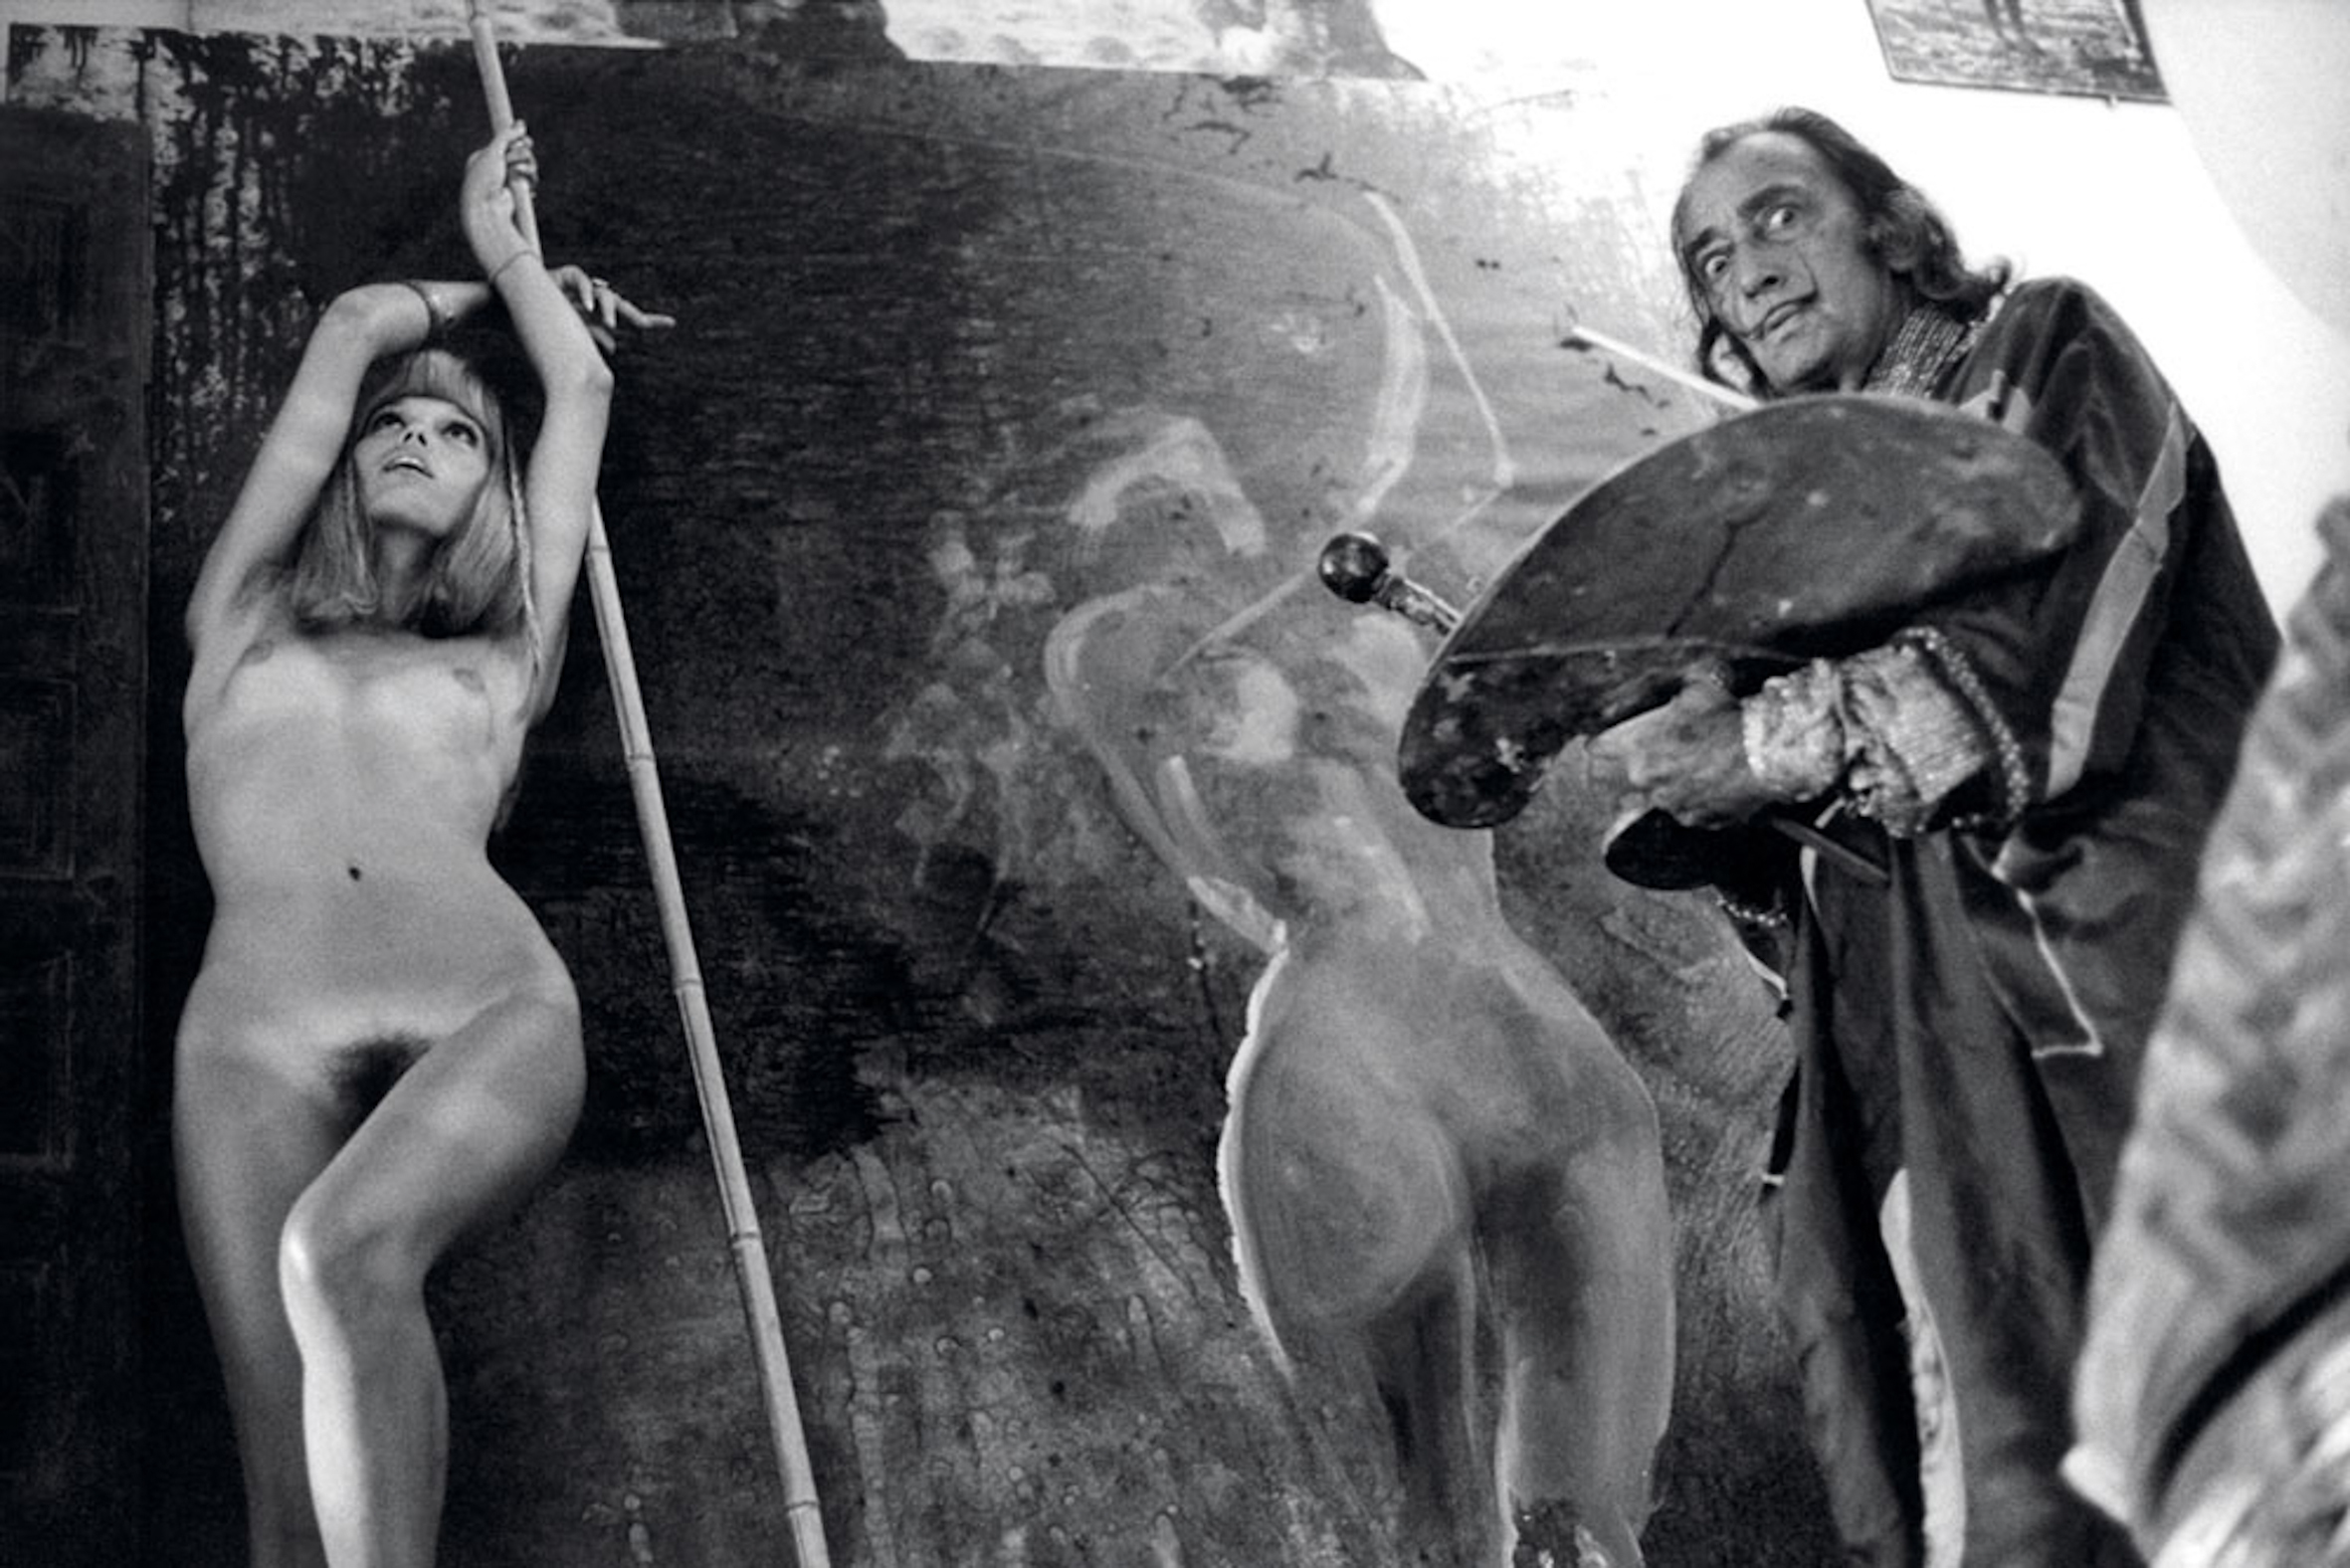 Dalí pintando a Amanda Lear en una foto realizada por Yul Brynner en 1971.